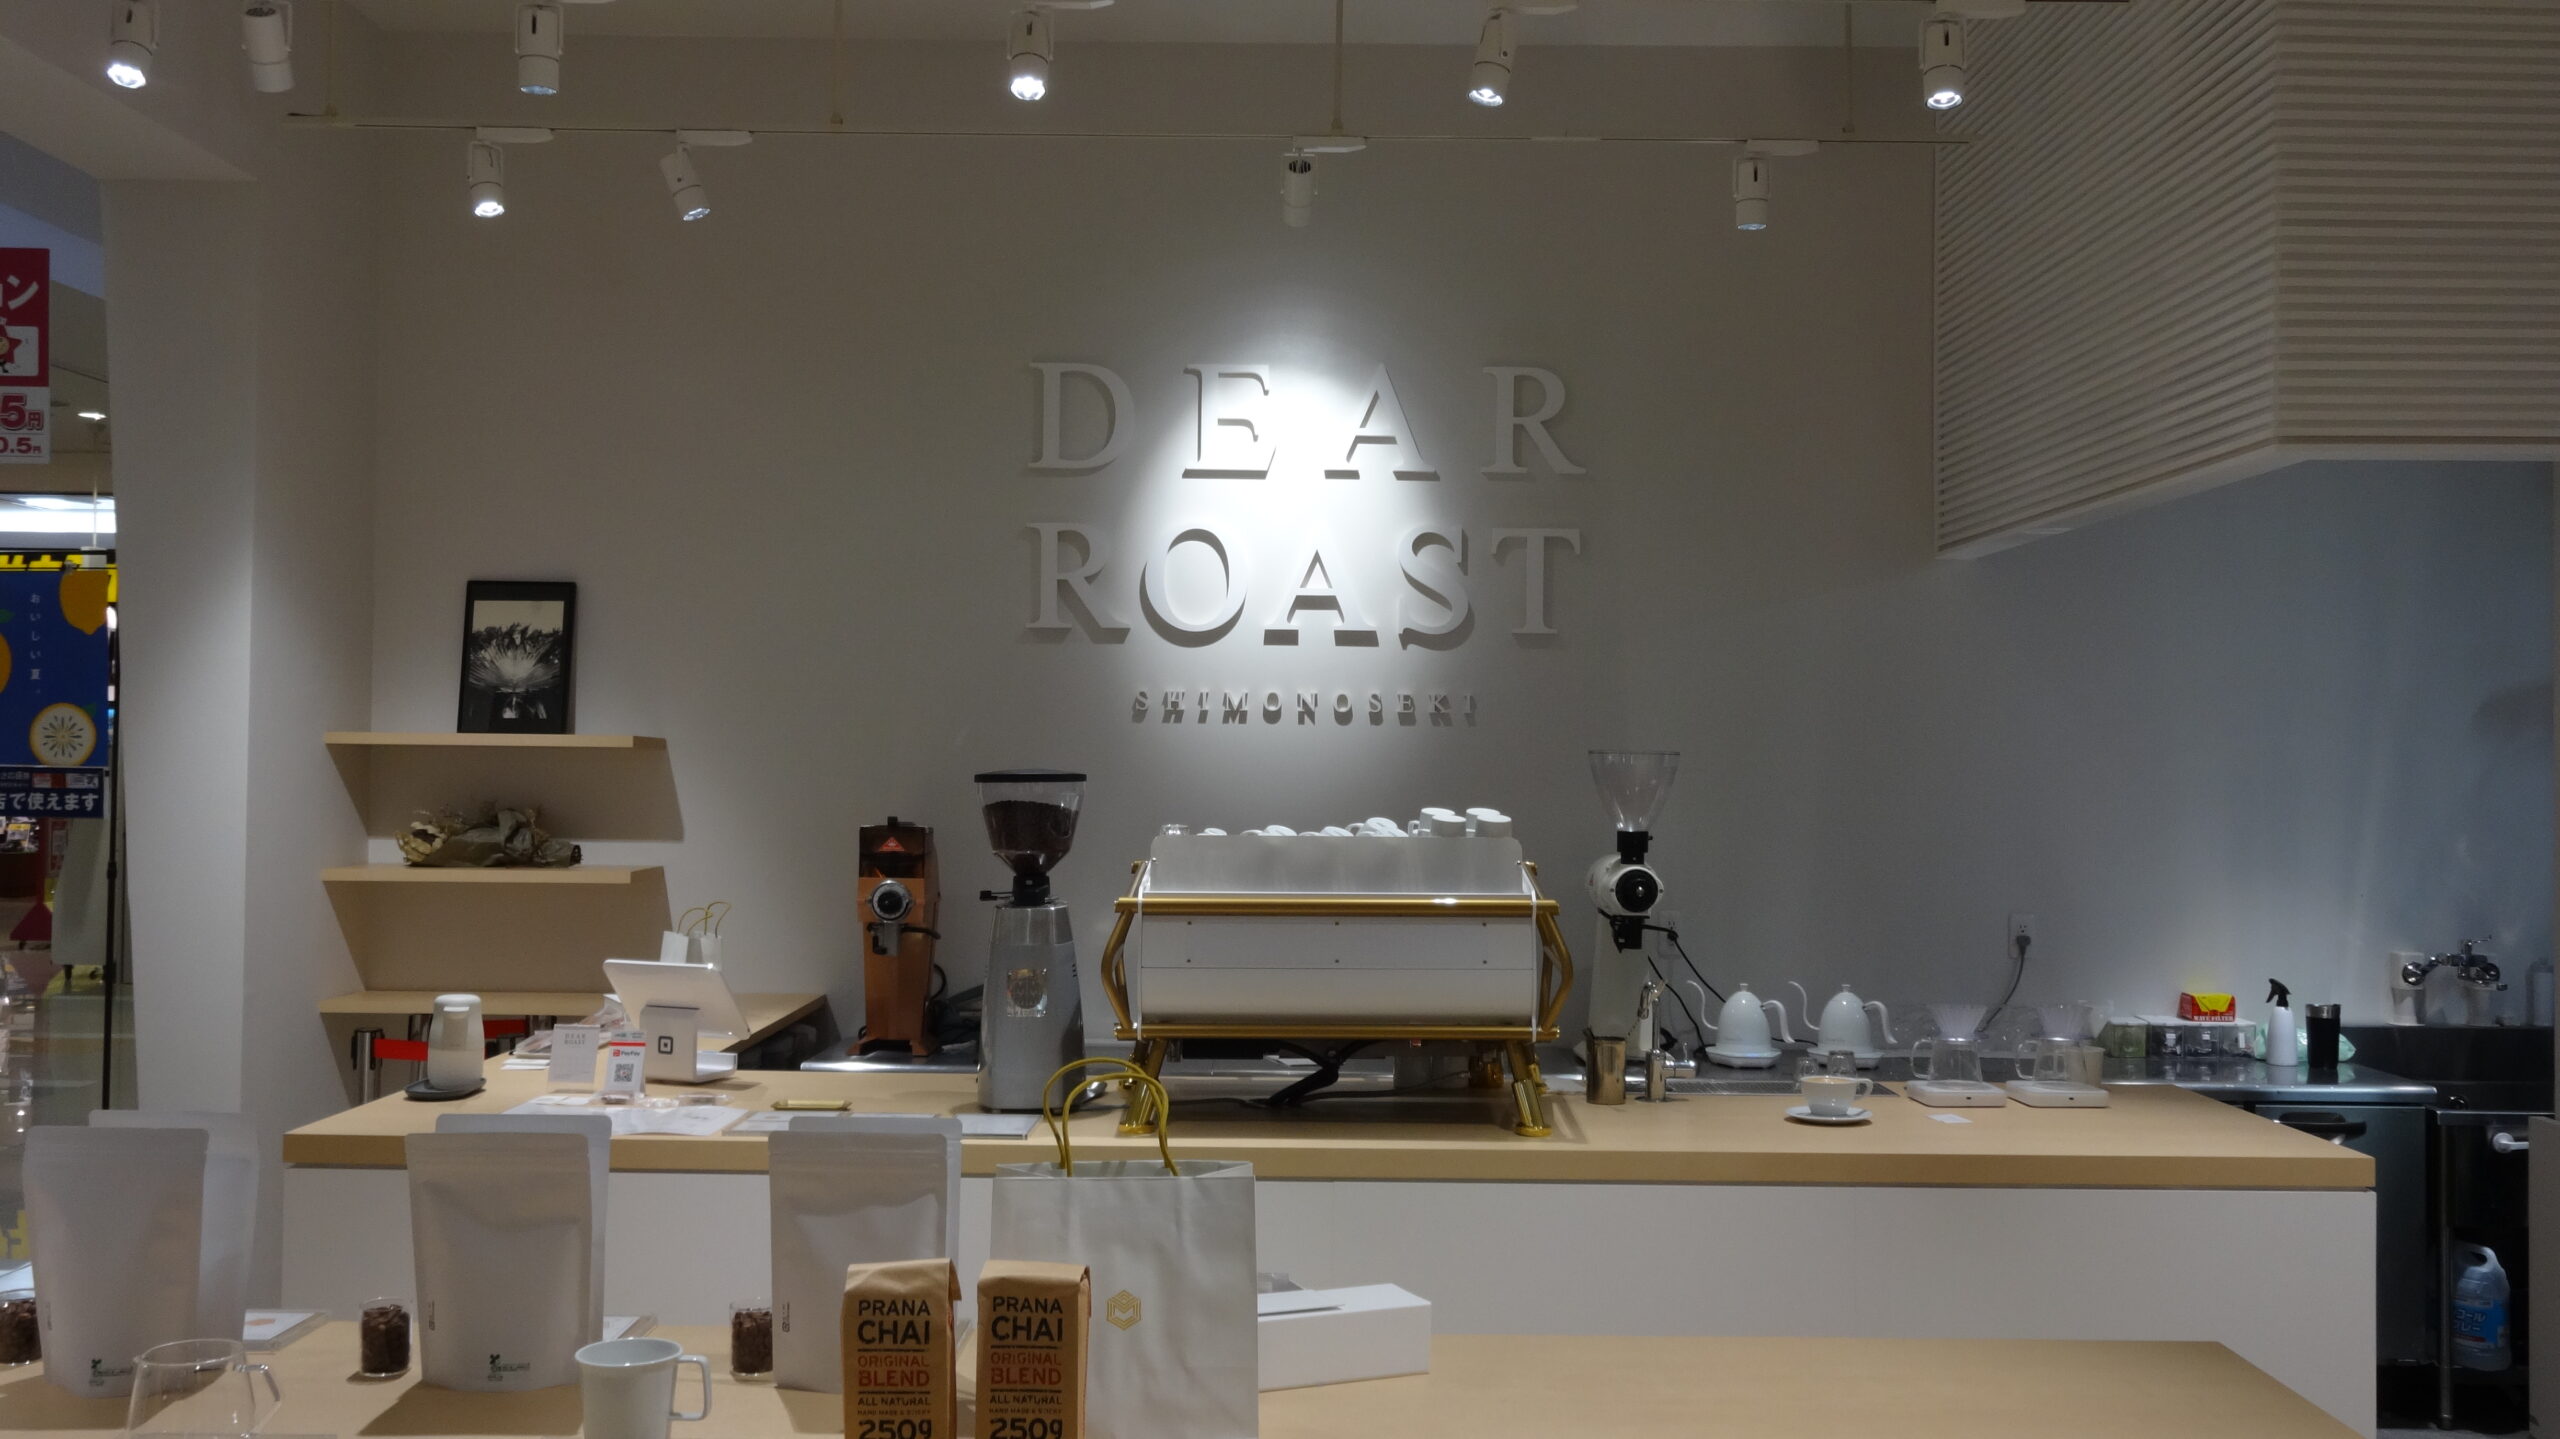 カフェオレ飲みたい❗️”DEAR ROAST”　に行きました